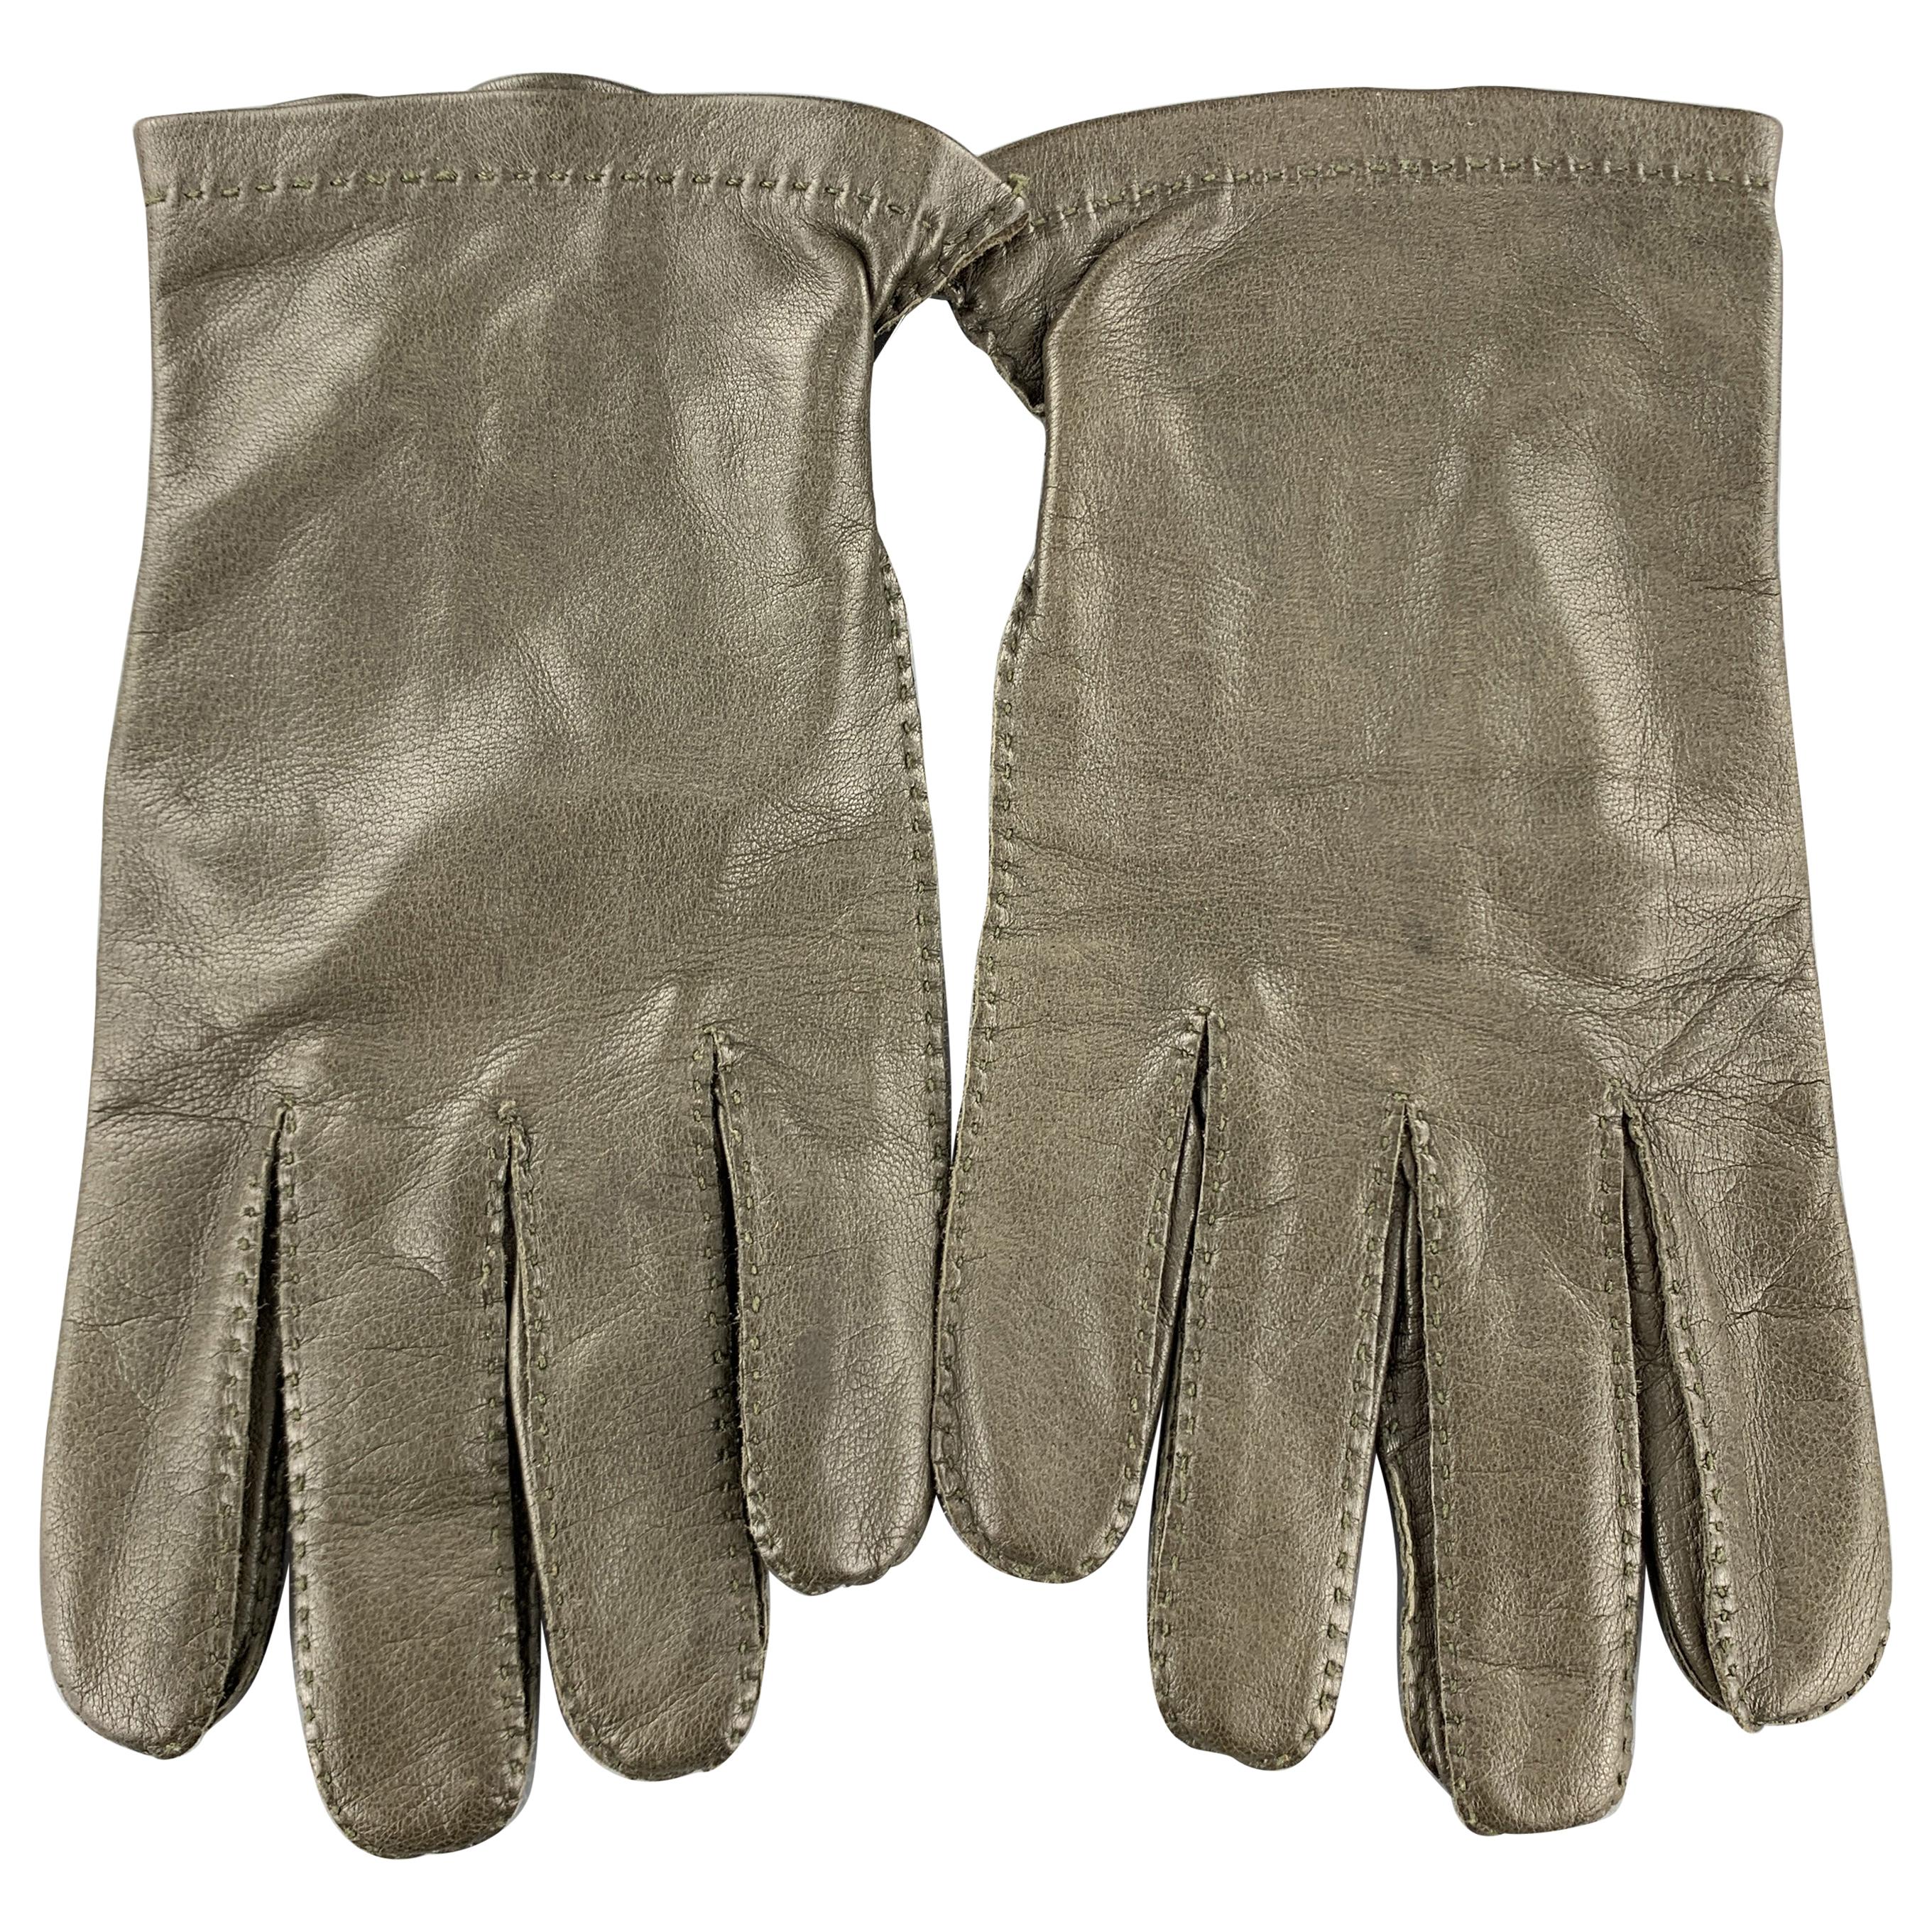 HOLLAND & HOLLAND Vintage Size 8.5 Olive Leather Silk Lined Gloves